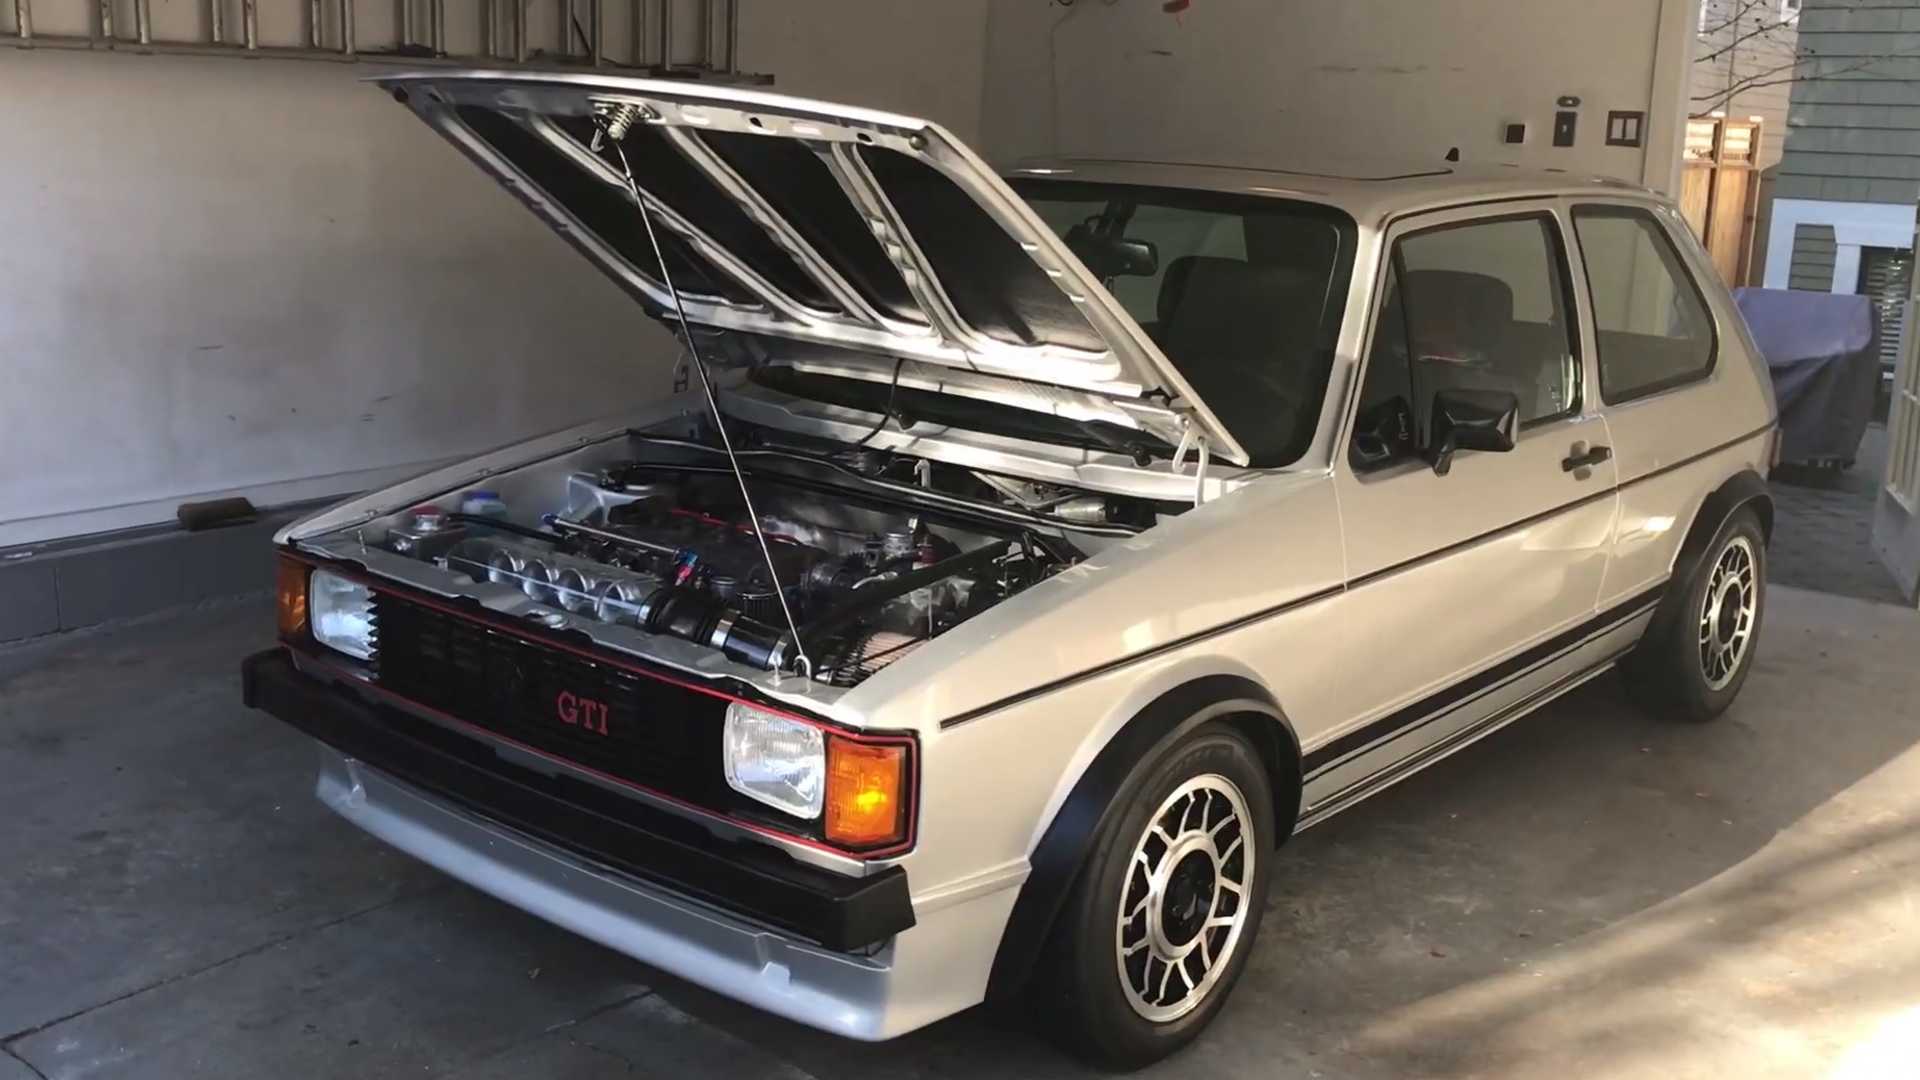 1983 VW Golf GTI оснастили 220-сильным атмосферным мотором